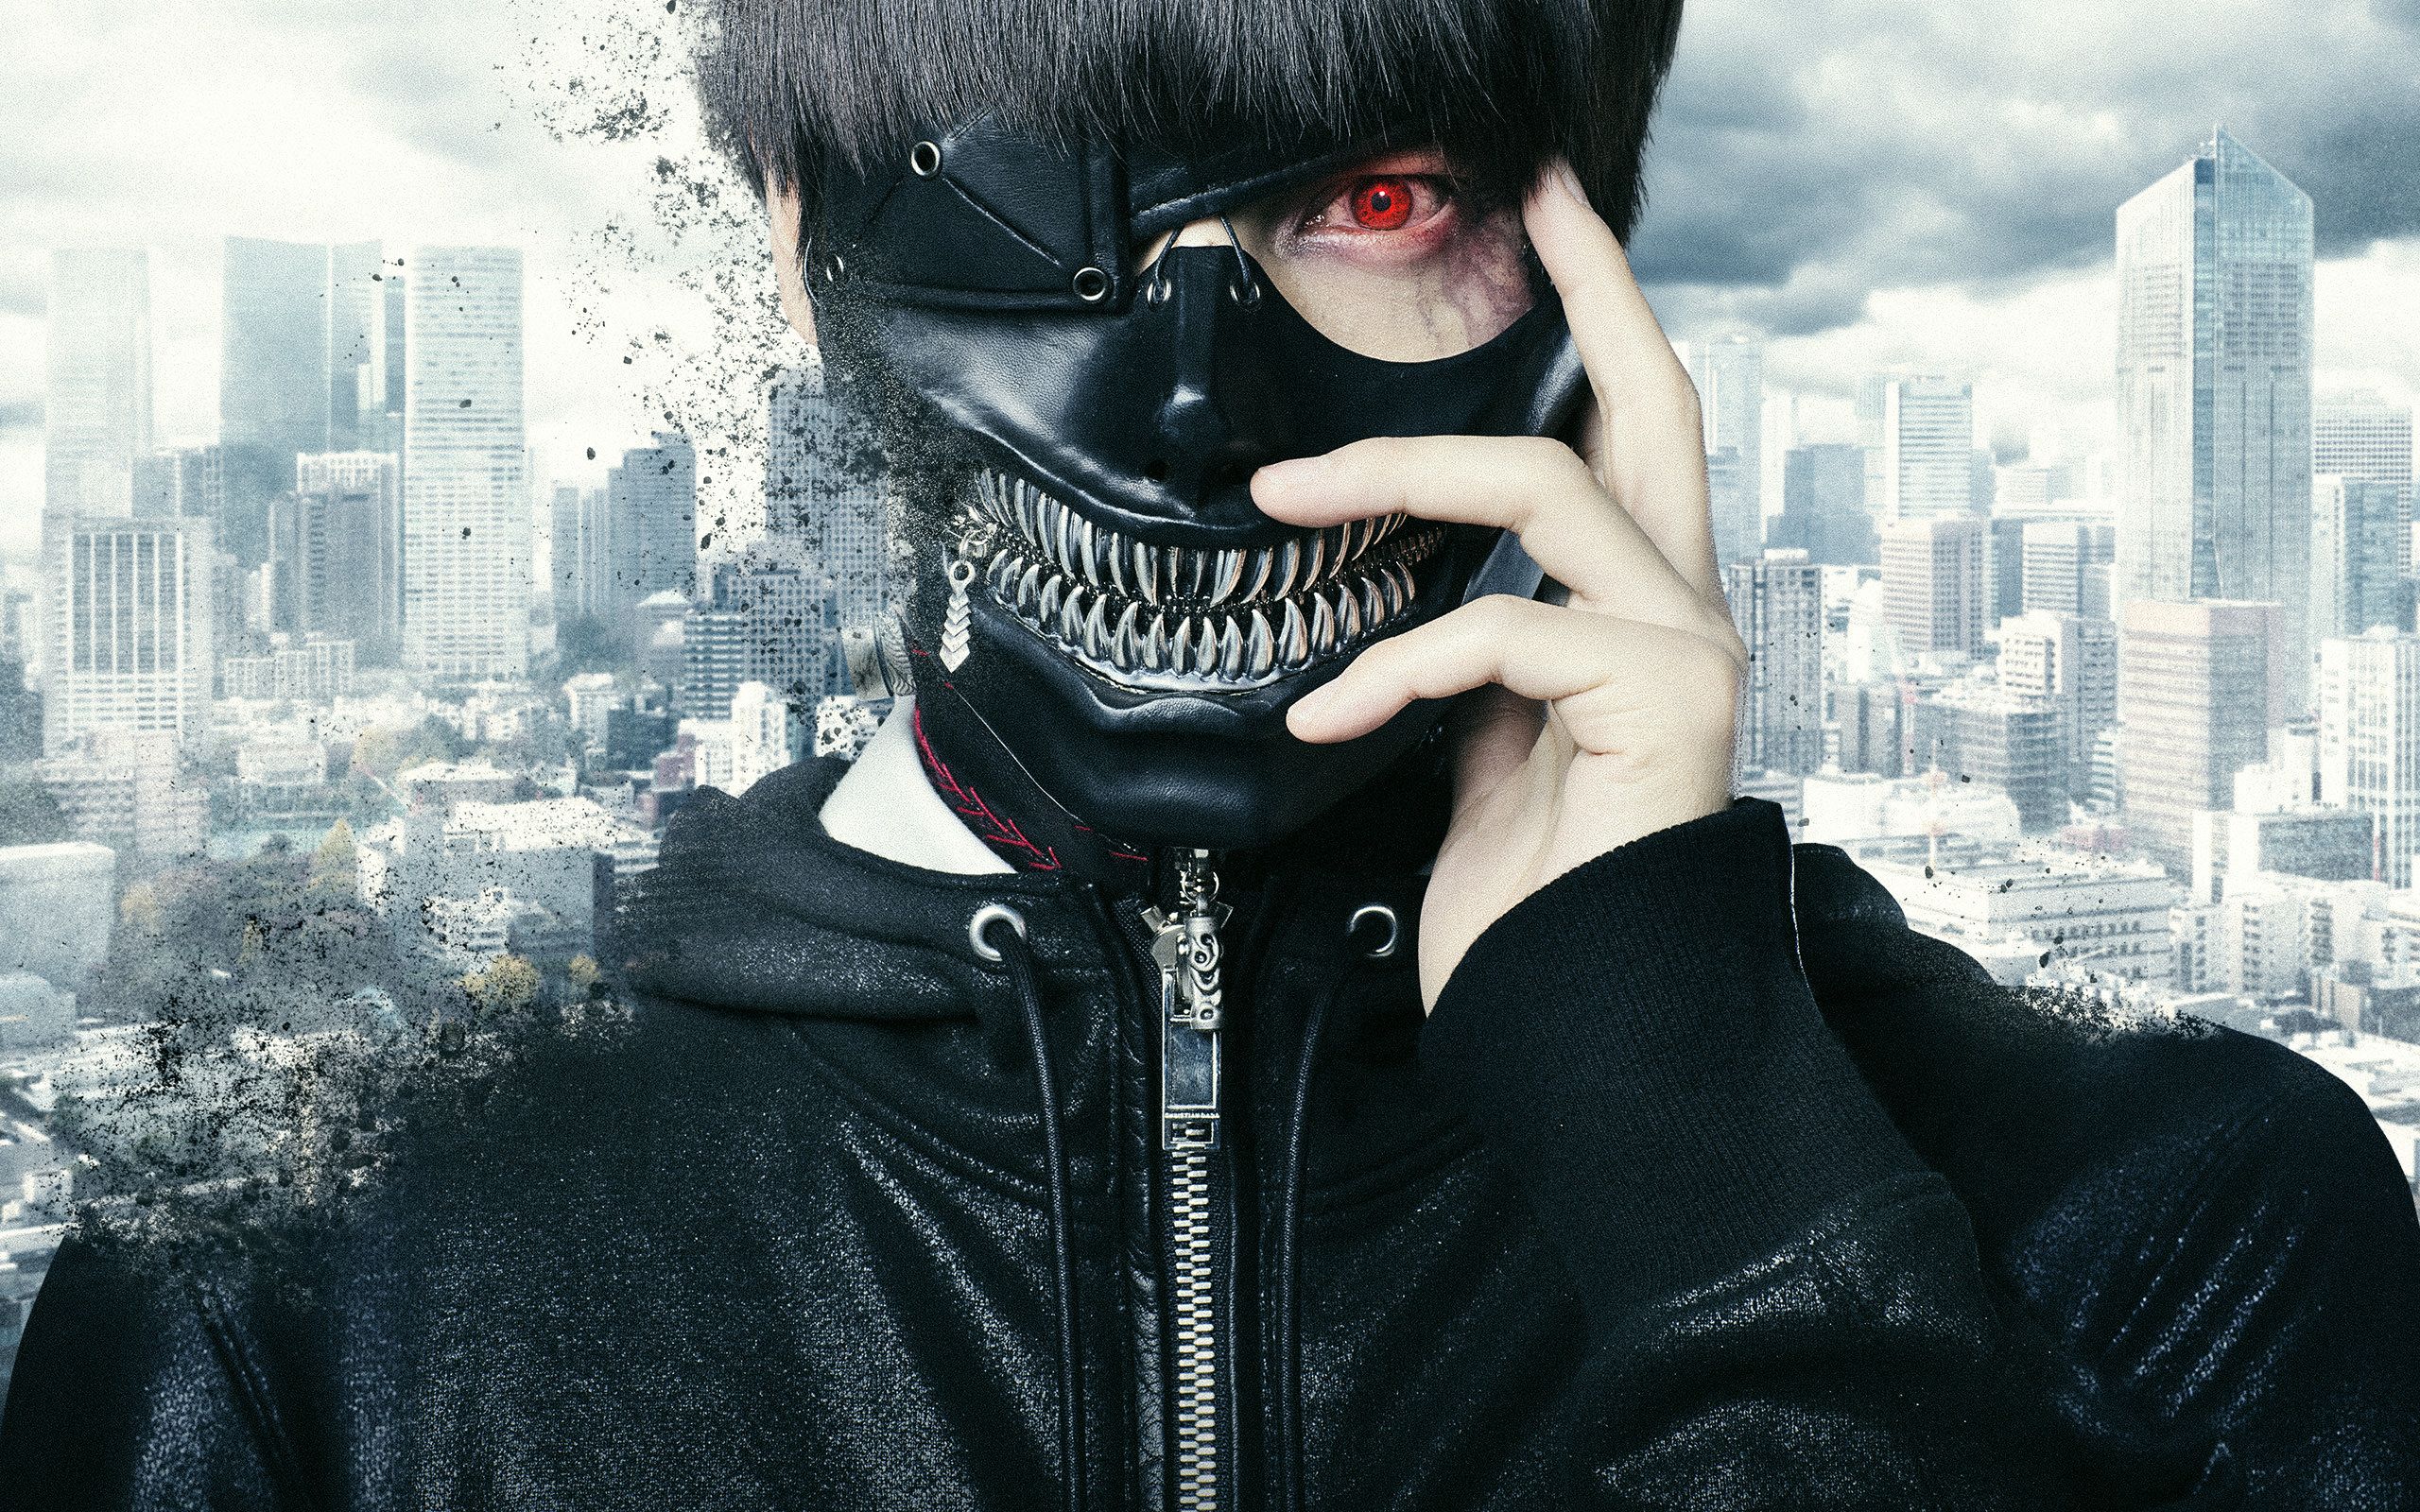 Tokyo Ghoul Ken Kaneki Wallpaper Phone by Soristhene on DeviantArt